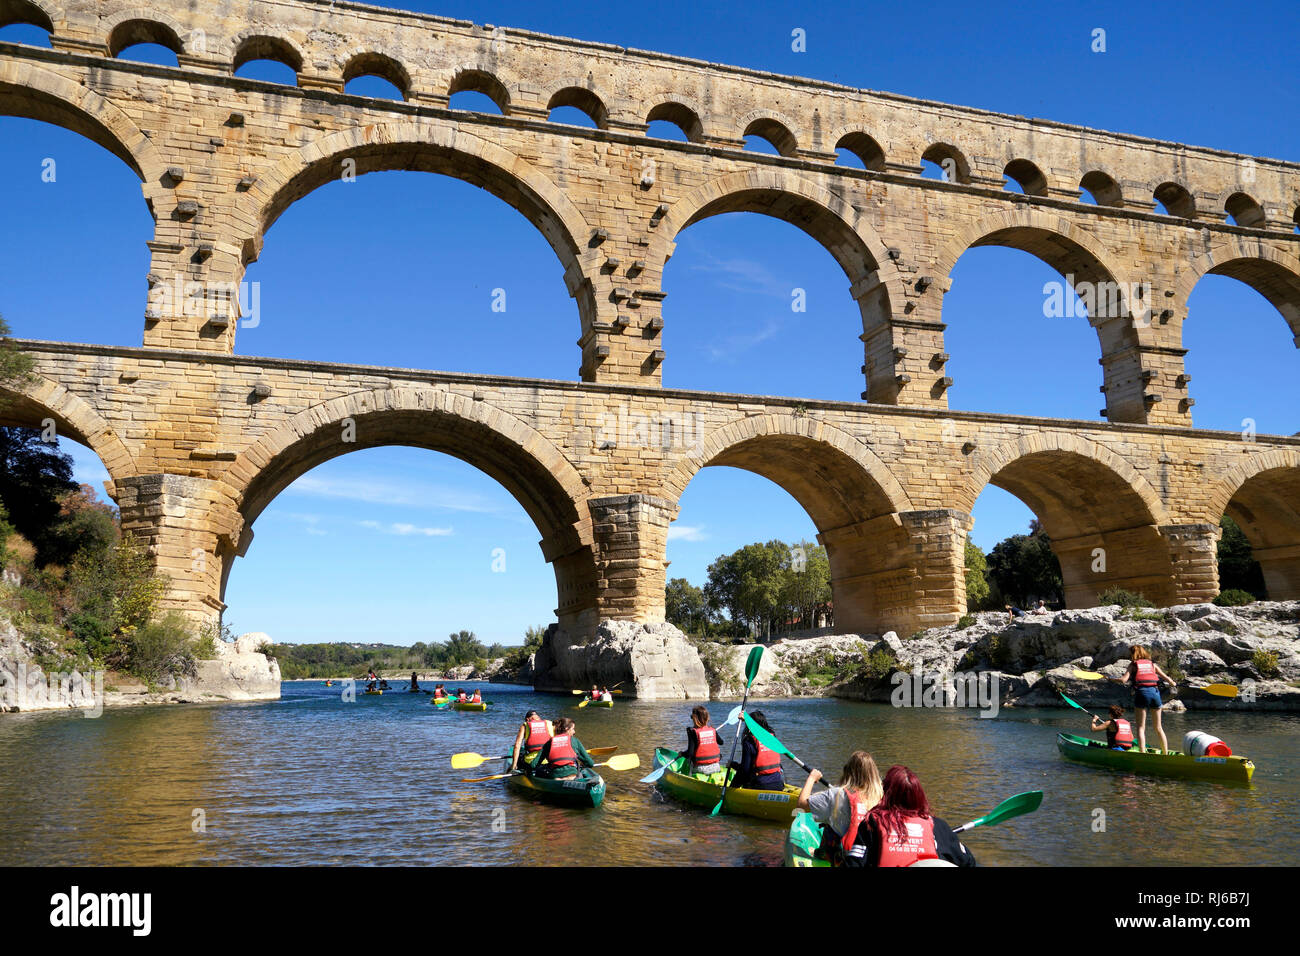 Europa, Frankreich, Provence-Alpes-Côte d'Azur, Avignon, Pont du Gard, Kajak Banque D'Images